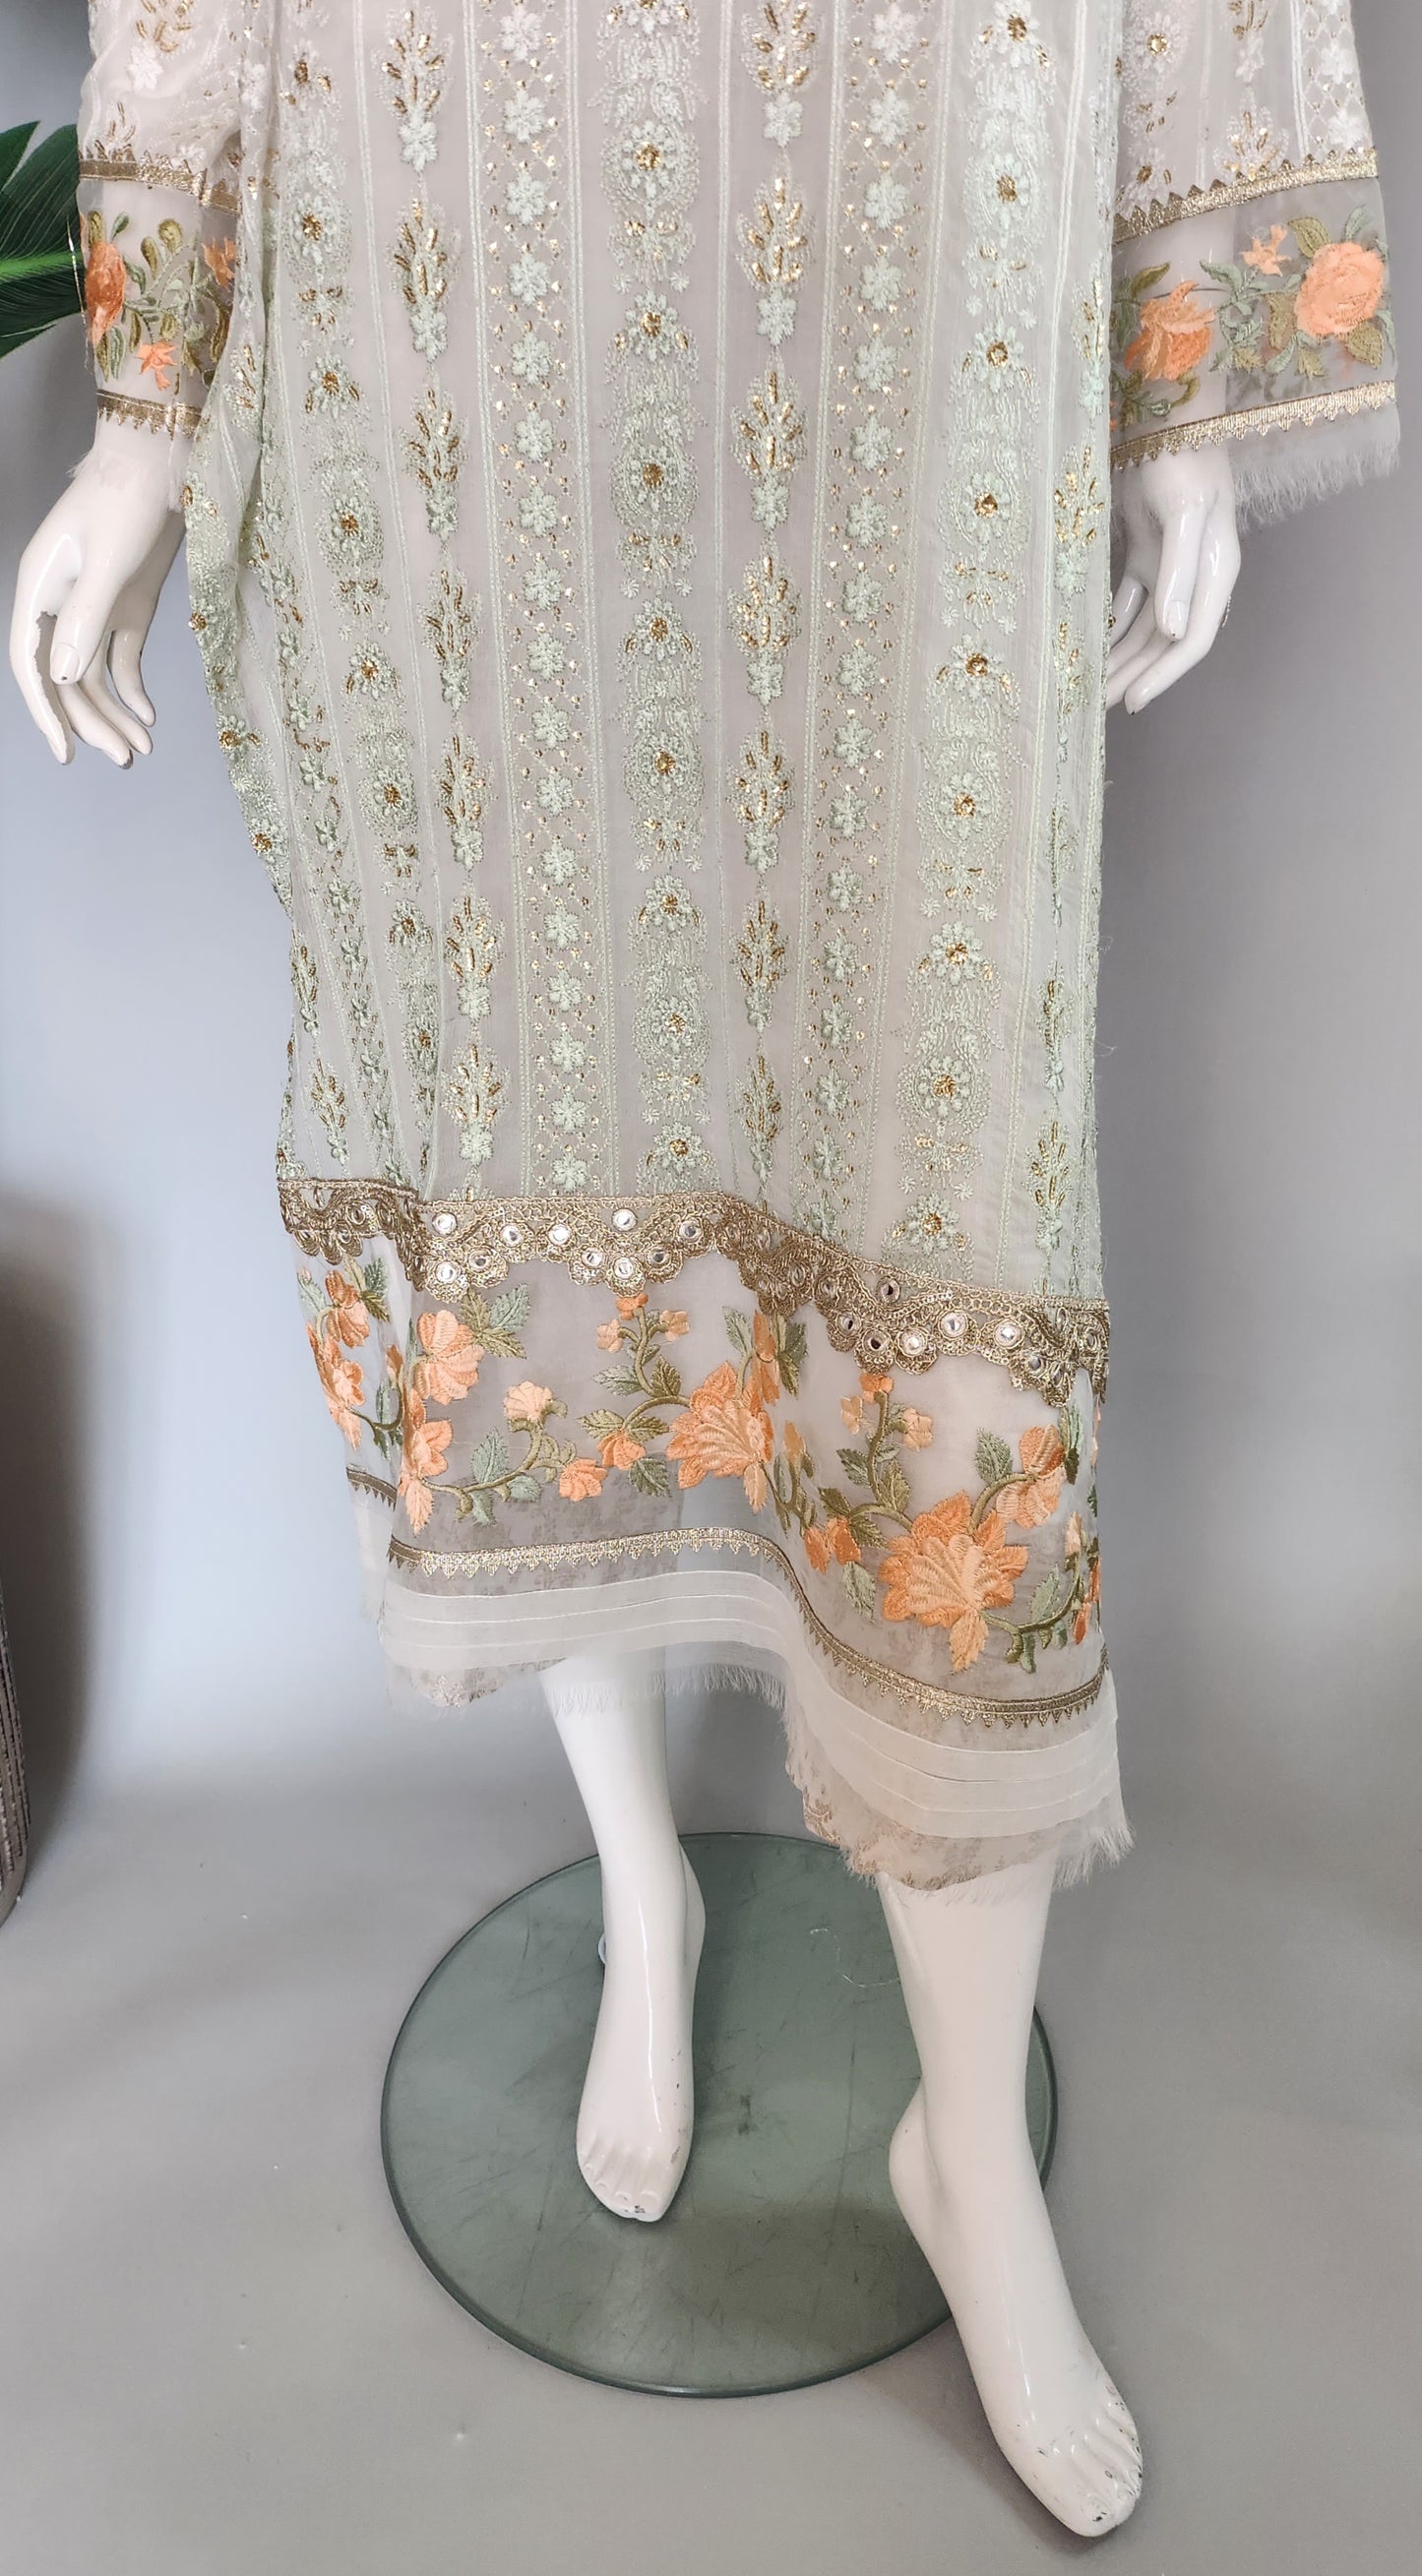 SADAF AHMAD - Sea Green Tie-dye chiffon with flower embroidery top + pant + dupatta